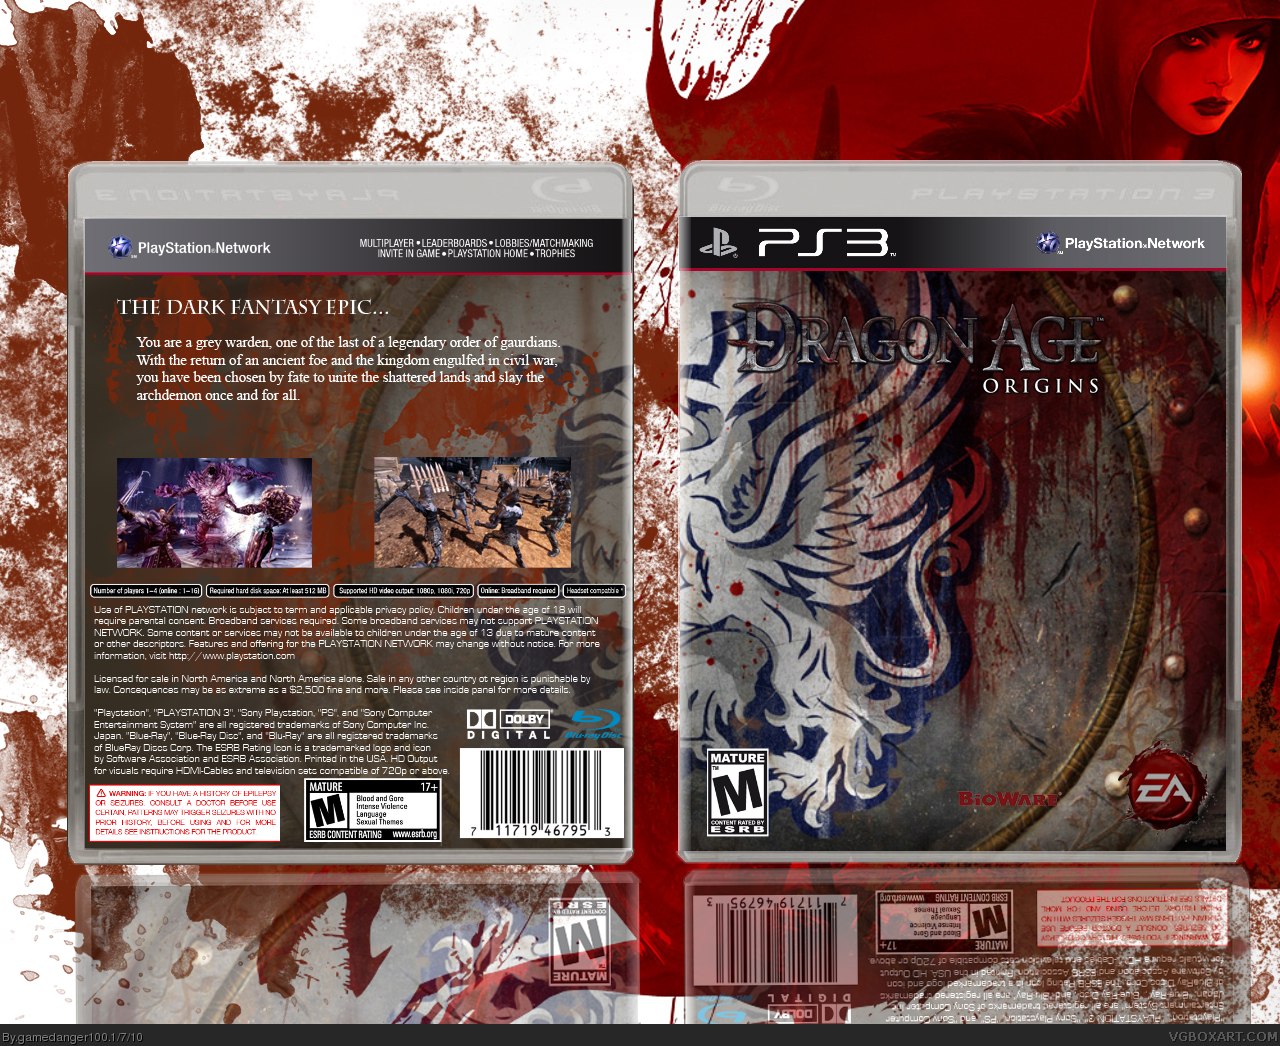 Dragon Age: Origins box cover